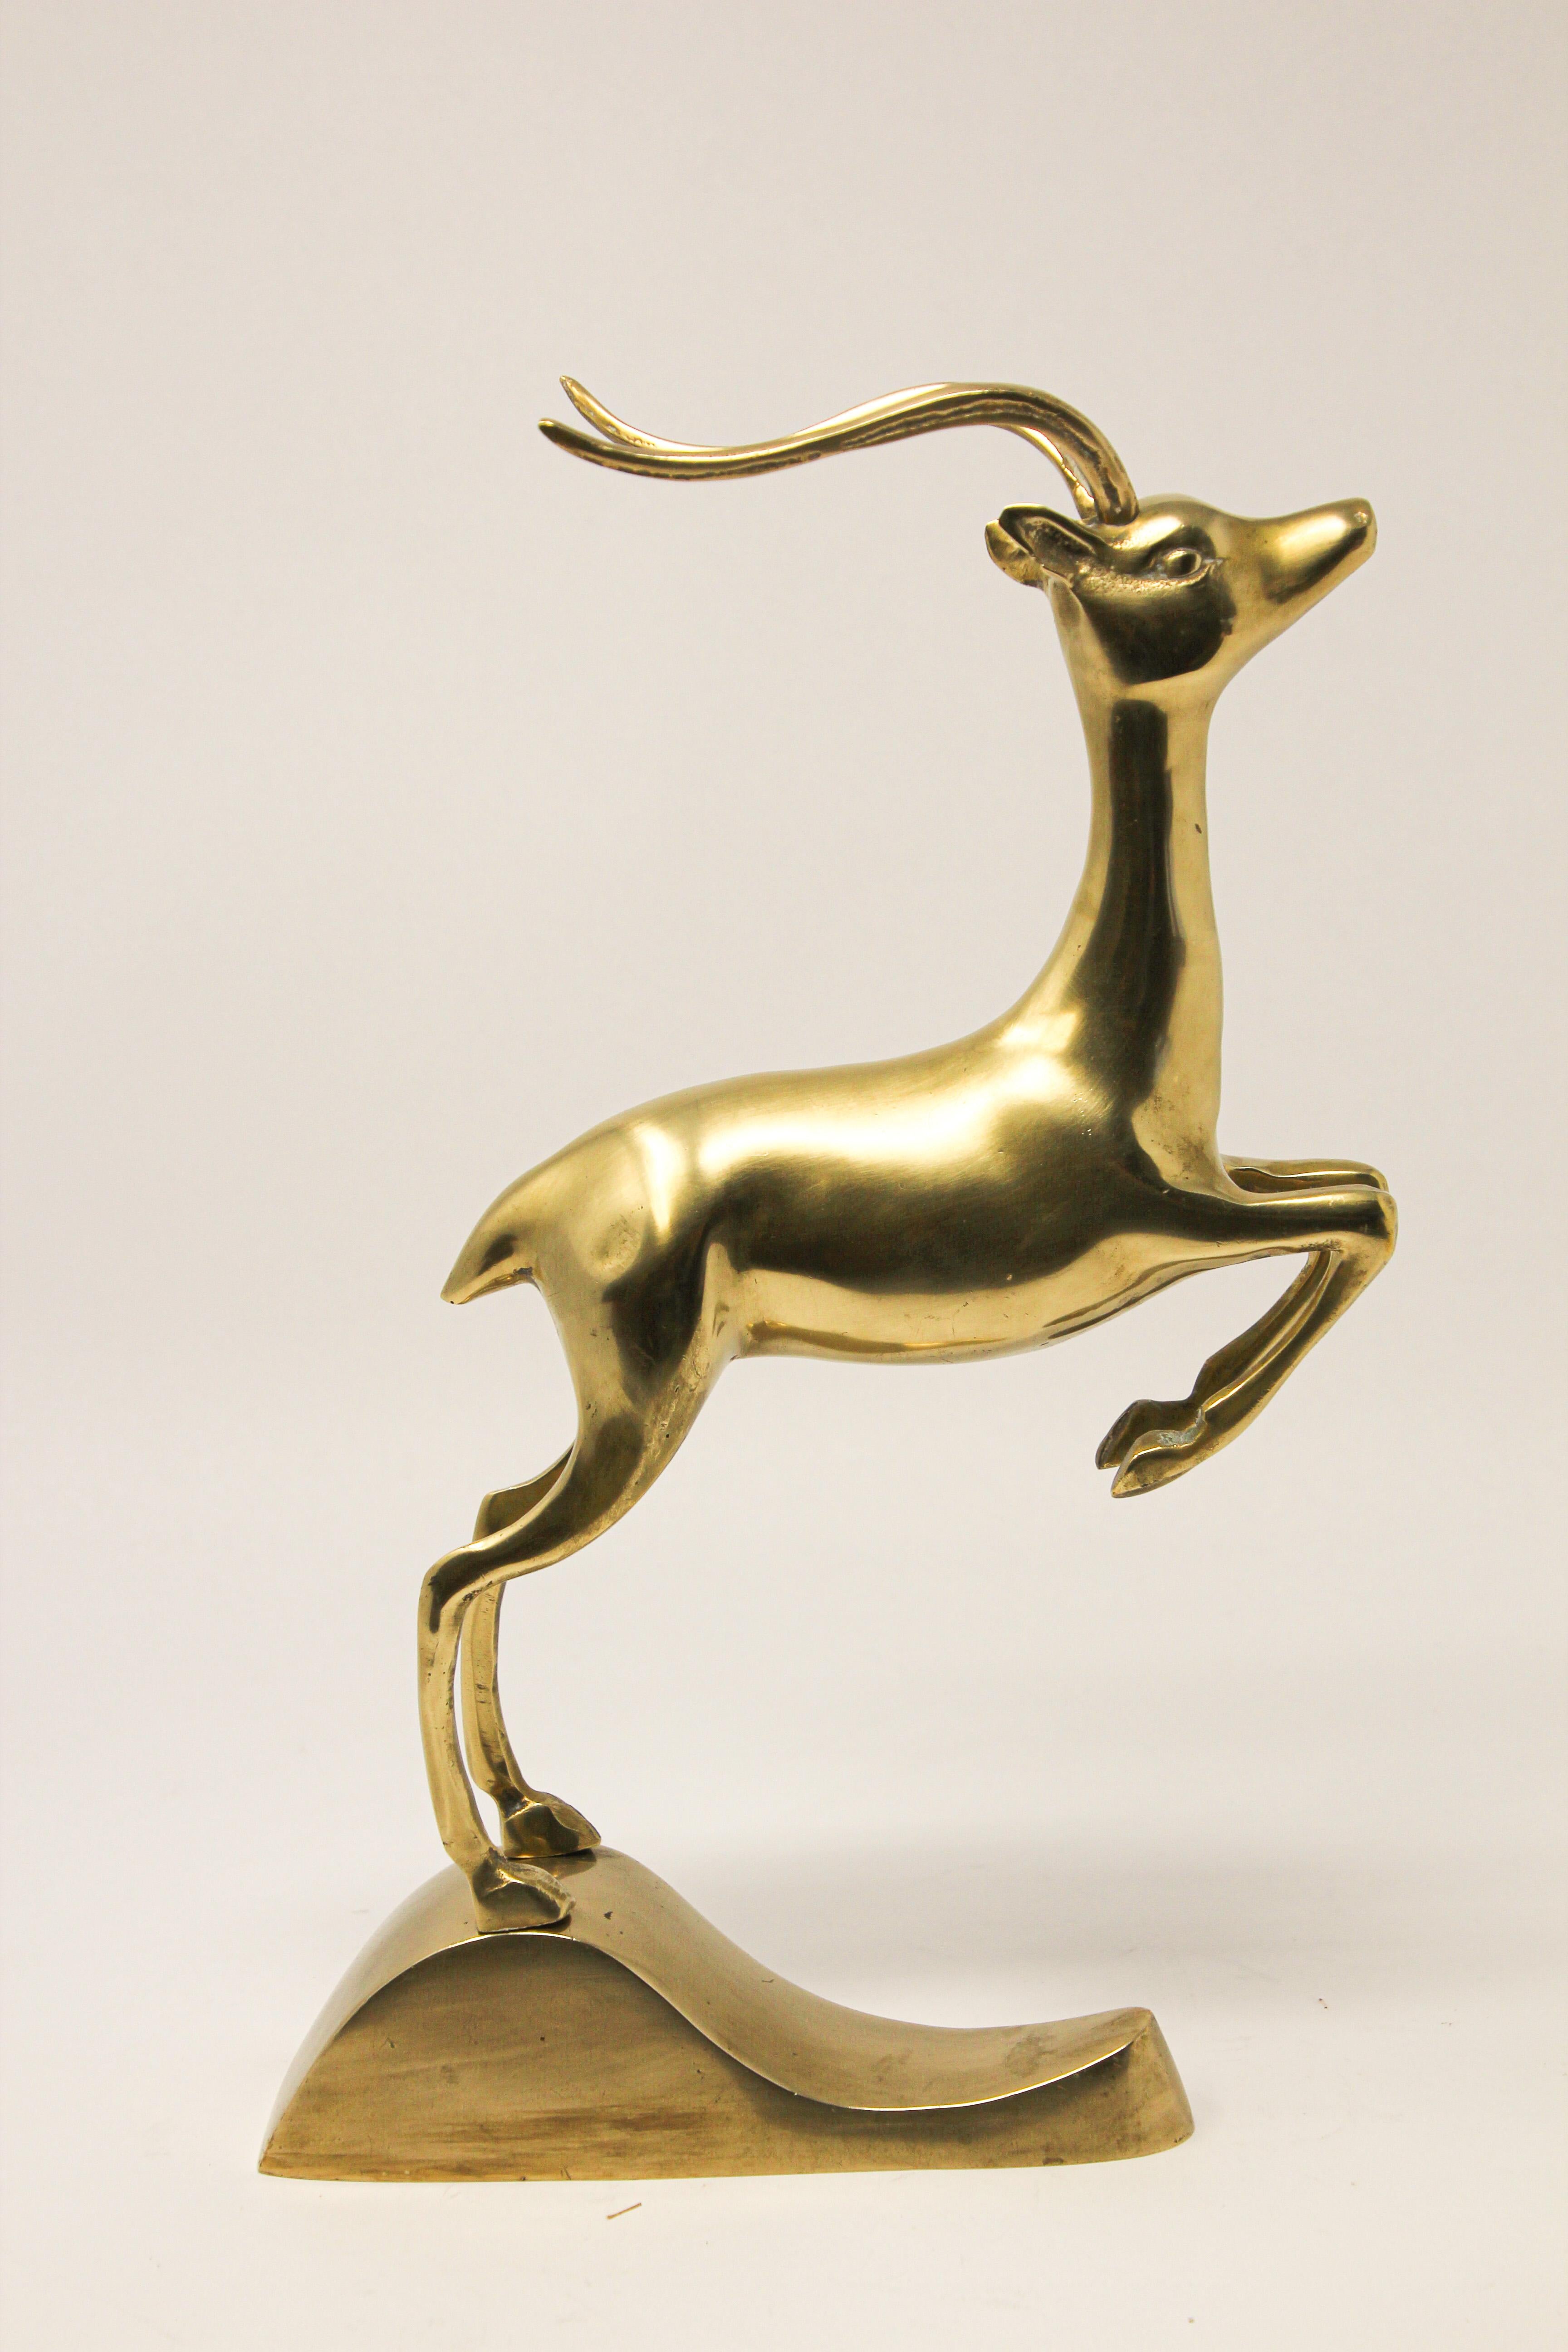 Vintage Art of Vintage, sculpture animalière en métal représentant une antilope, un impala, une gazelle ou un cerf en train de bondir. 
Figurine en laiton en basse polie qui sert de serre-livre ou de sculpture animalière décorative individuelle.